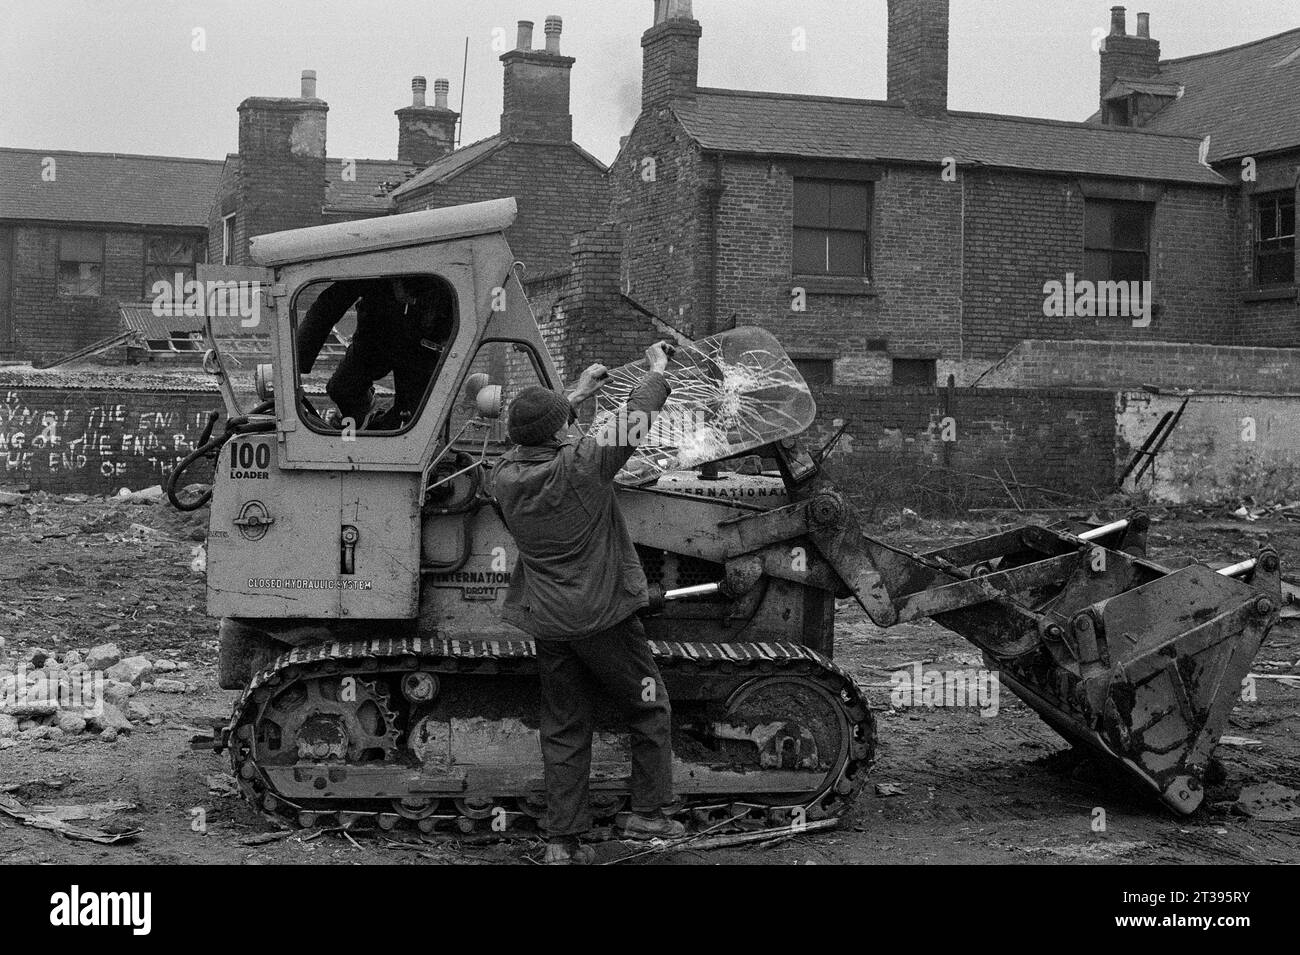 Gli appaltatori di demolizione cambiarono il parabrezza del loro bulldozer dopo che i manifestanti lo ruppero durante la slum di St Ann's, Nottingham. 1969-72 Foto Stock